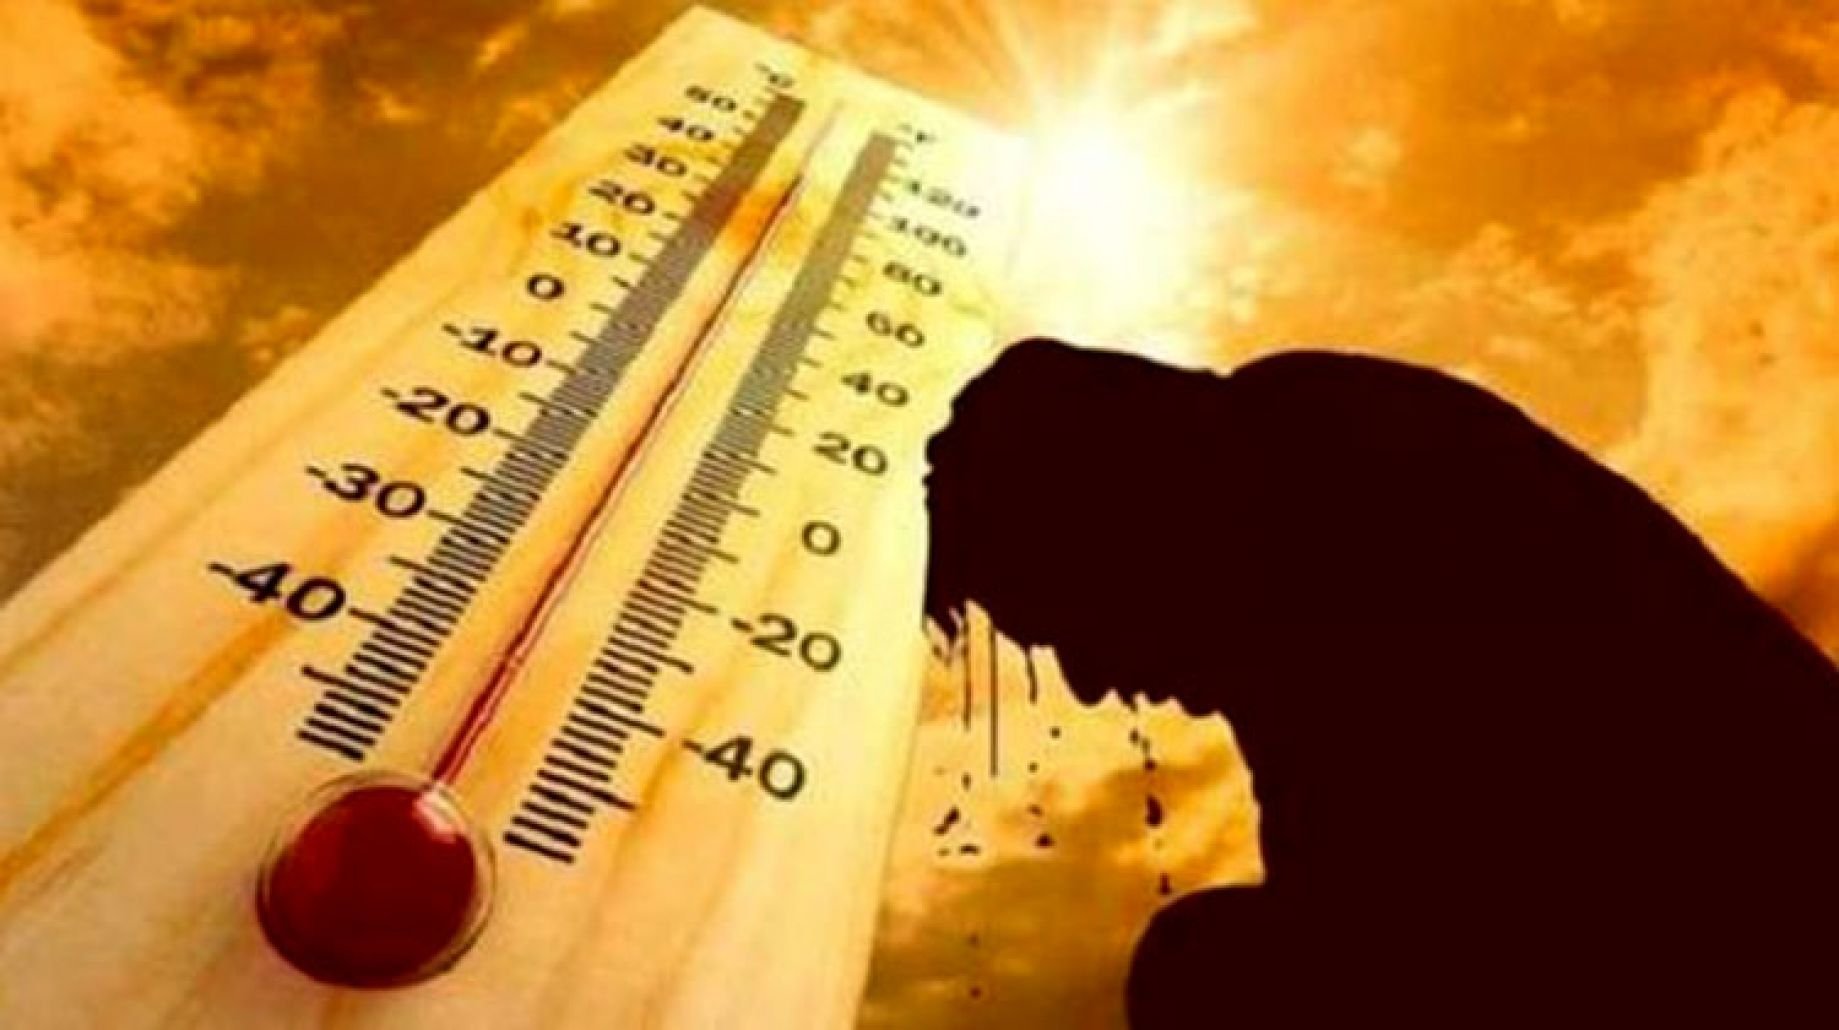 الأرصاد: غدا طقس حار نهارا مائل للبرودة ليلا على أغلب الأنحاء.. والعظمى بالقاهرة 33